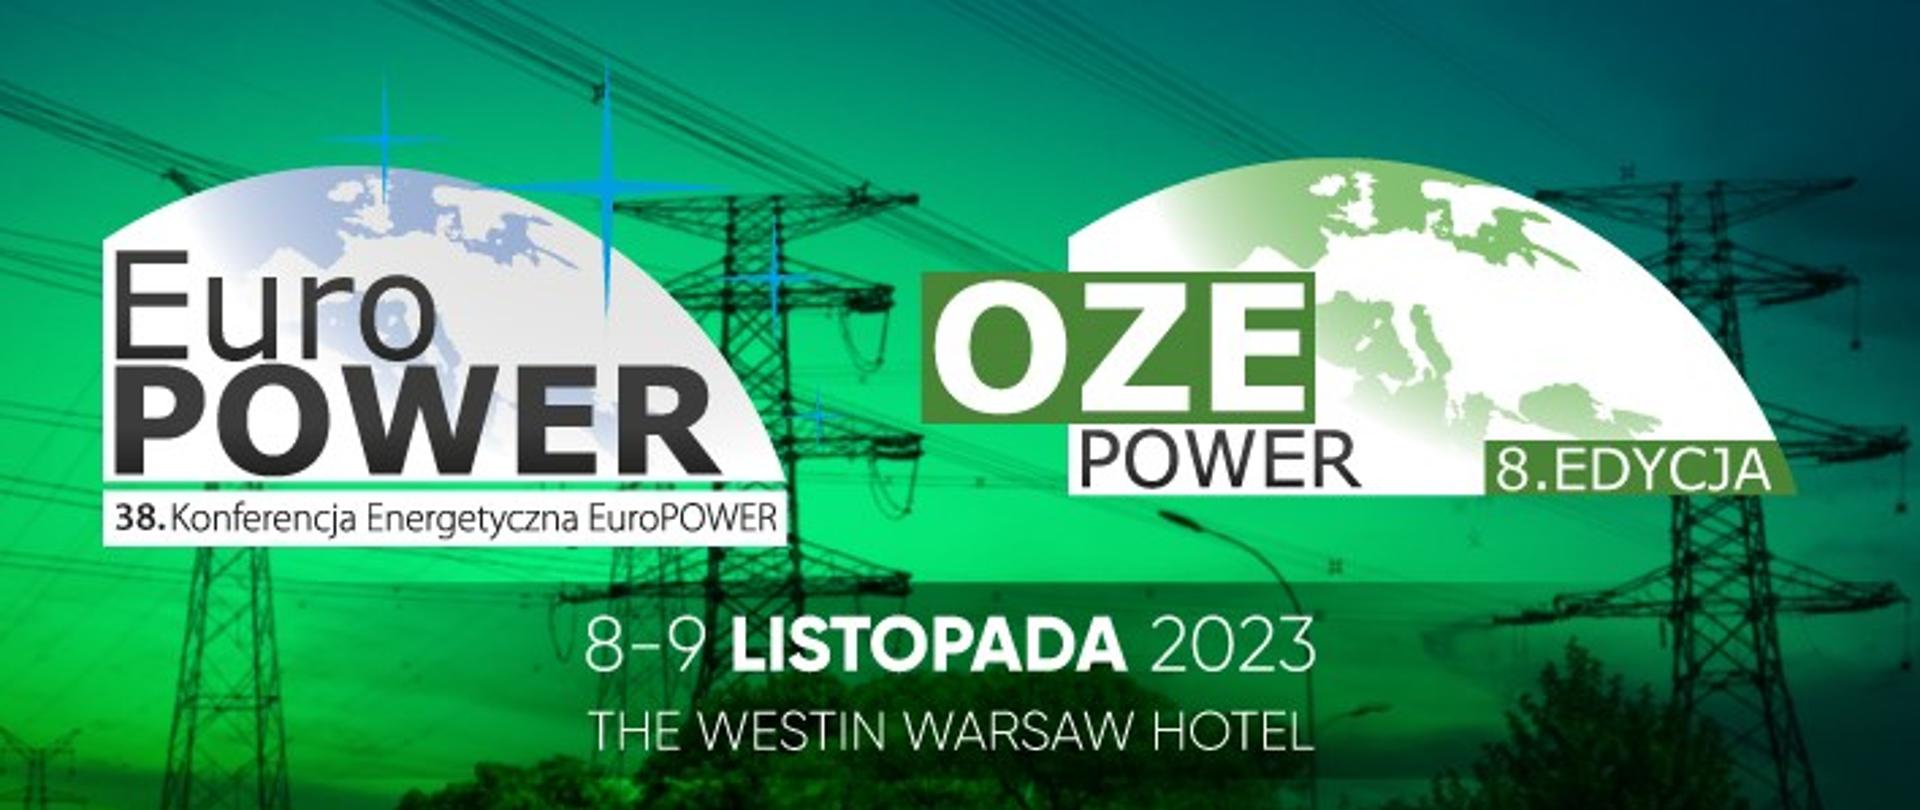 Grafika informacyjno-promocyjna o 38. Konferencji Energetycznej EuroPOWER & 8. OZE POWER.